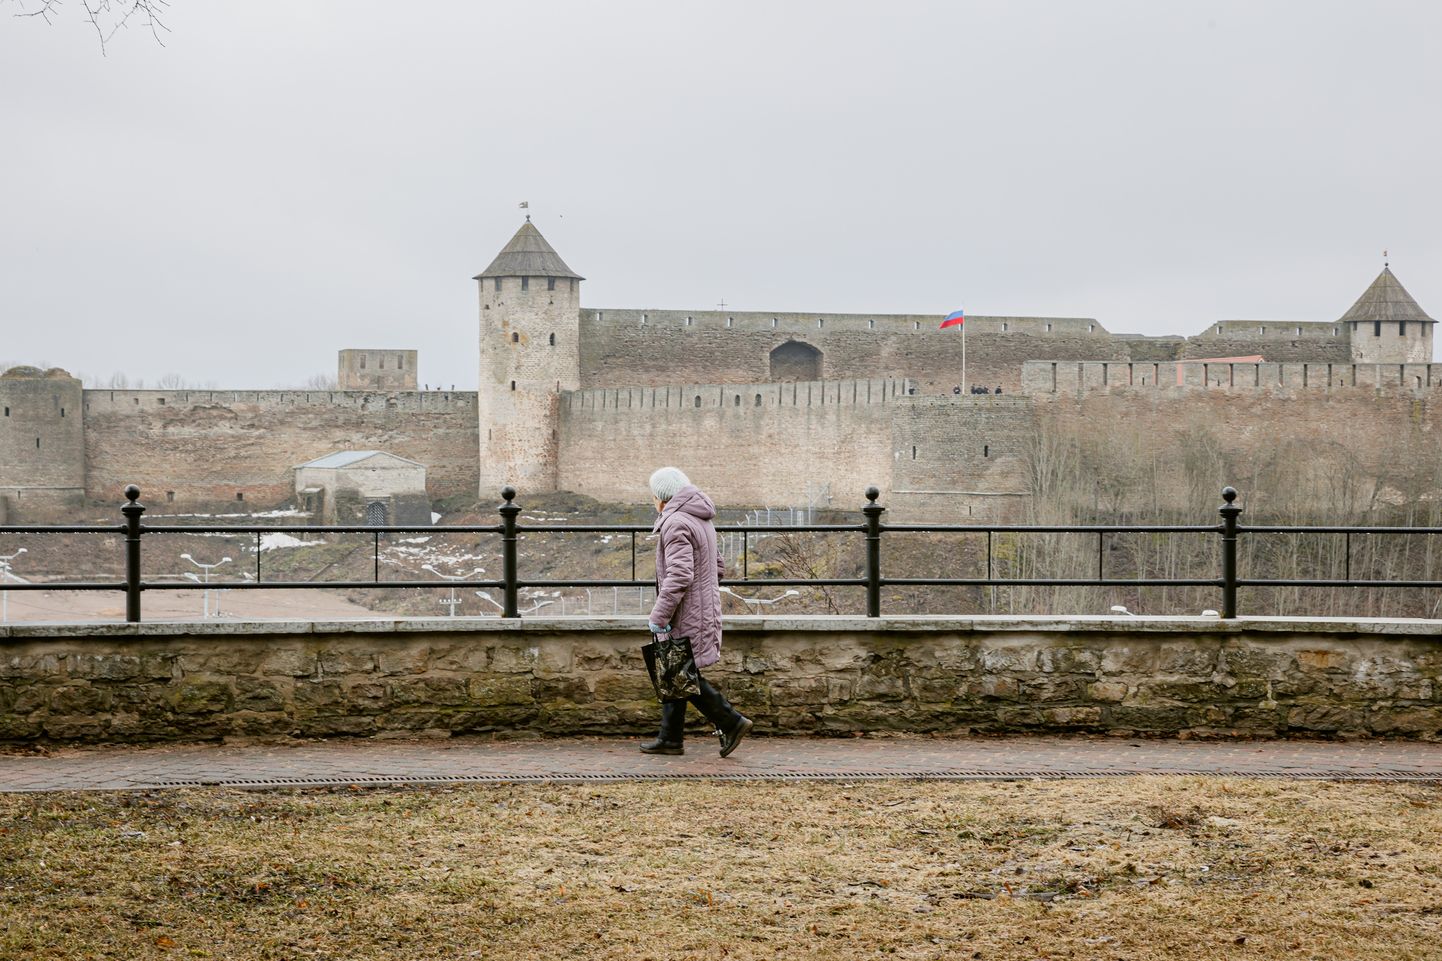 Möödunud nädalavahetusel, mil piirijõe vastaskaldal presidenti ümber valiti, oli olukord Narva piiril rahulik.